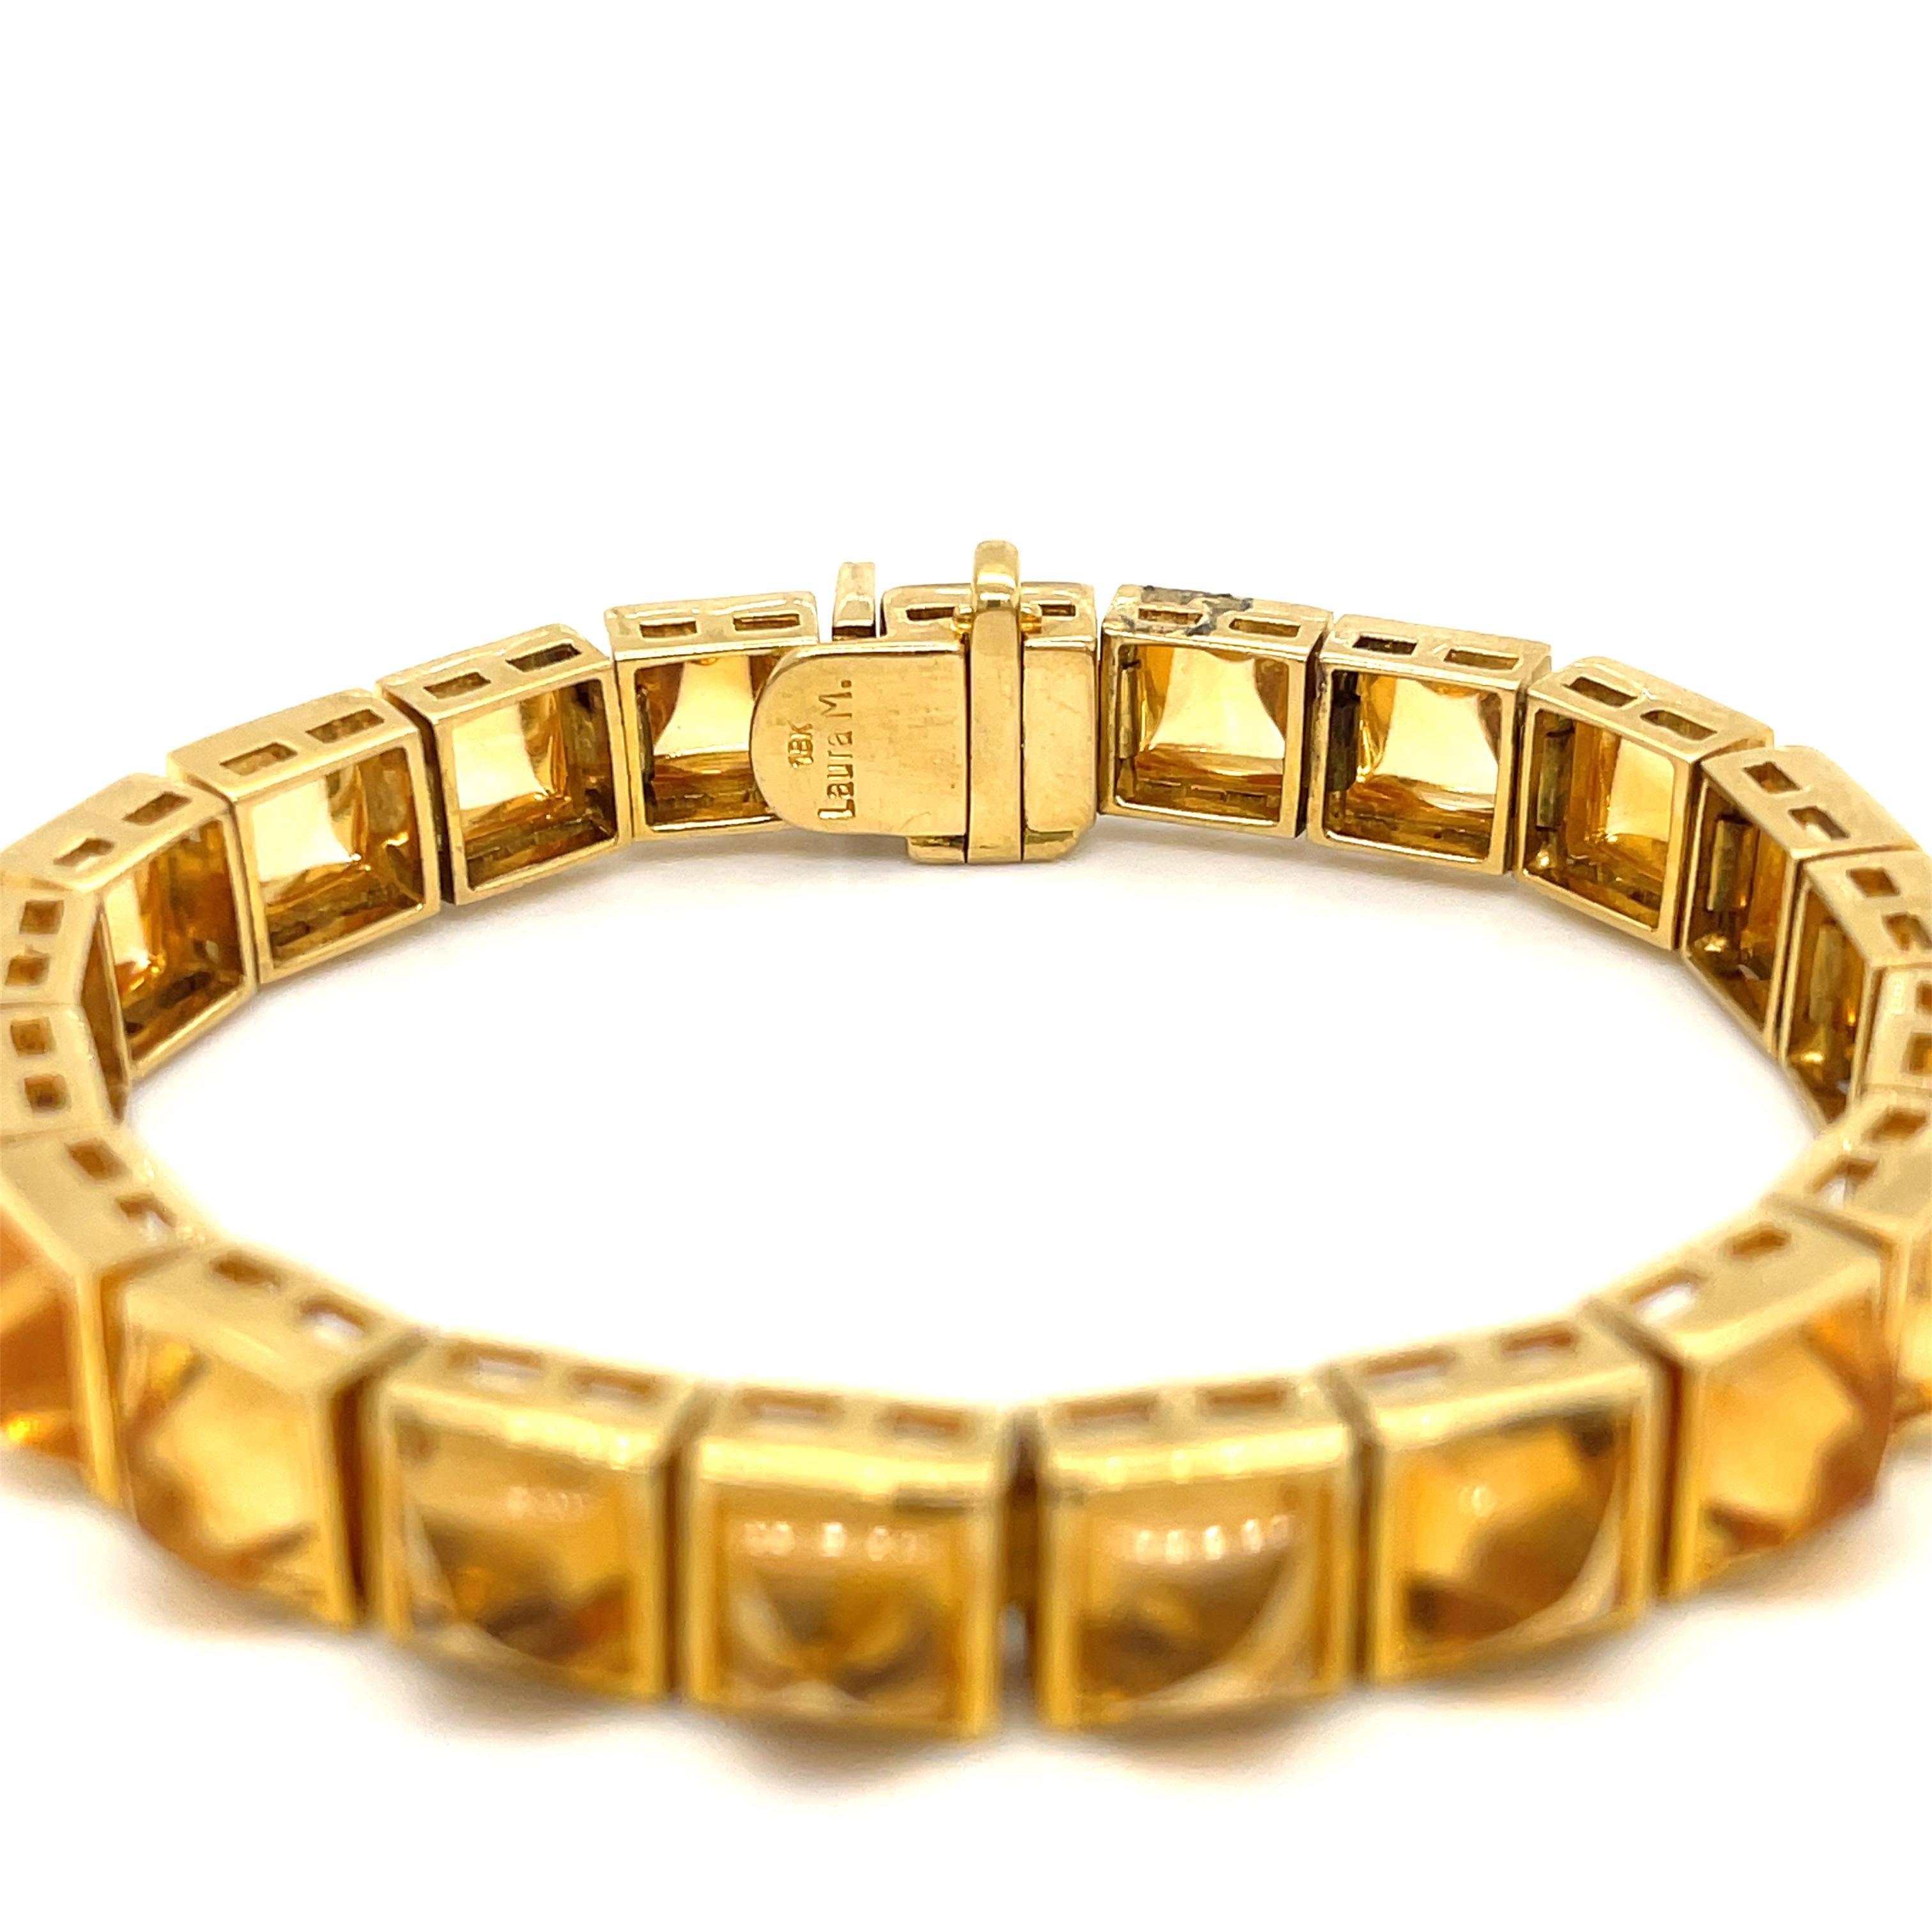 Bracelet de citrine Laura Munder en or jaune 18 carats. Le bracelet comporte 21 citrines taillées en cabochon en forme de pain de sucre. 
Longueur de 7 pouces
0,33